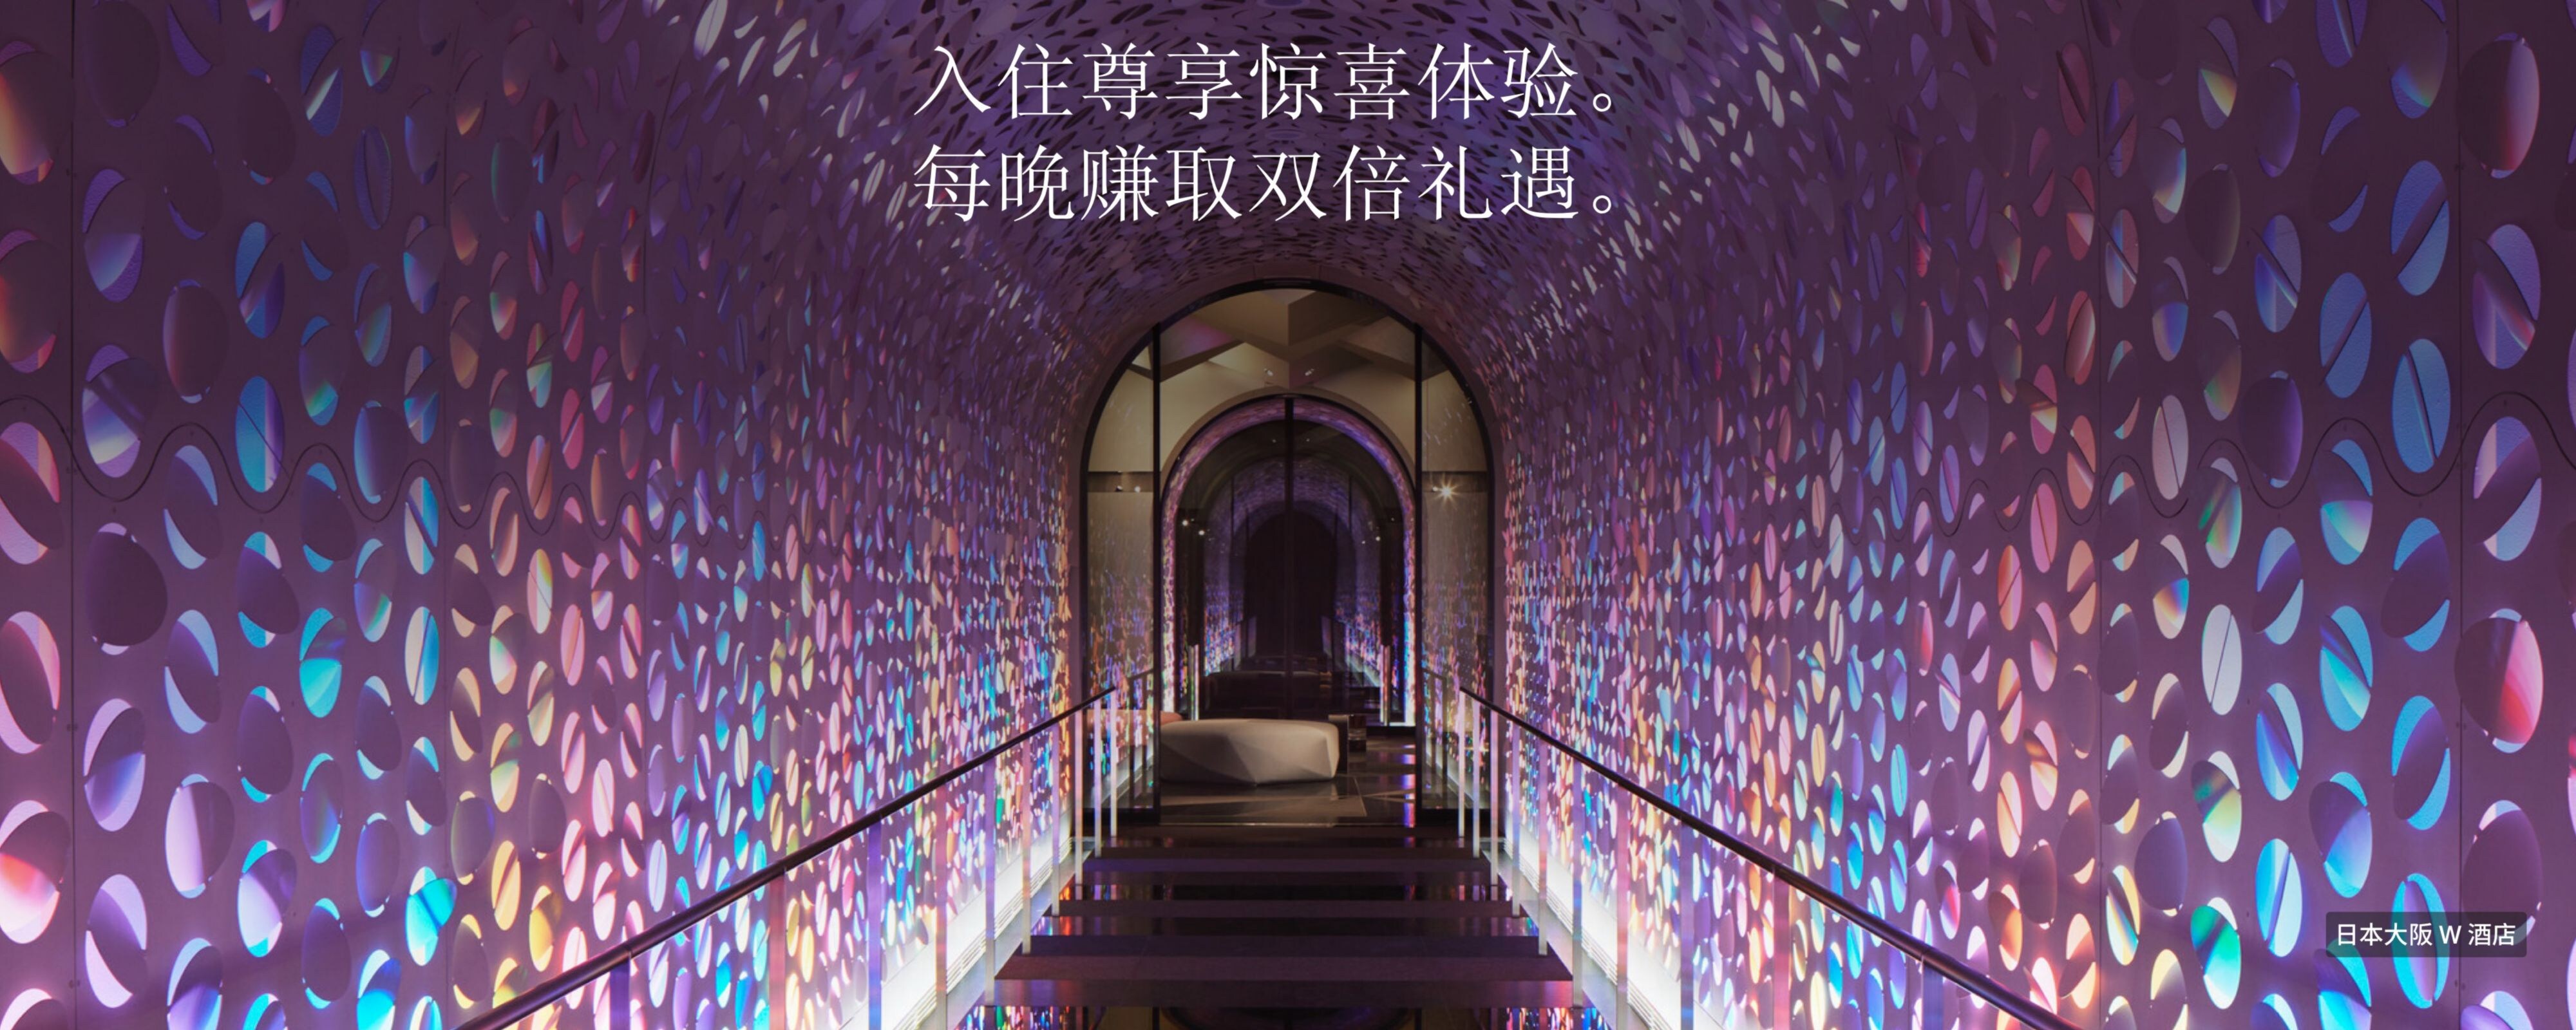 背光的拱形走廊闪着紫色亮光。